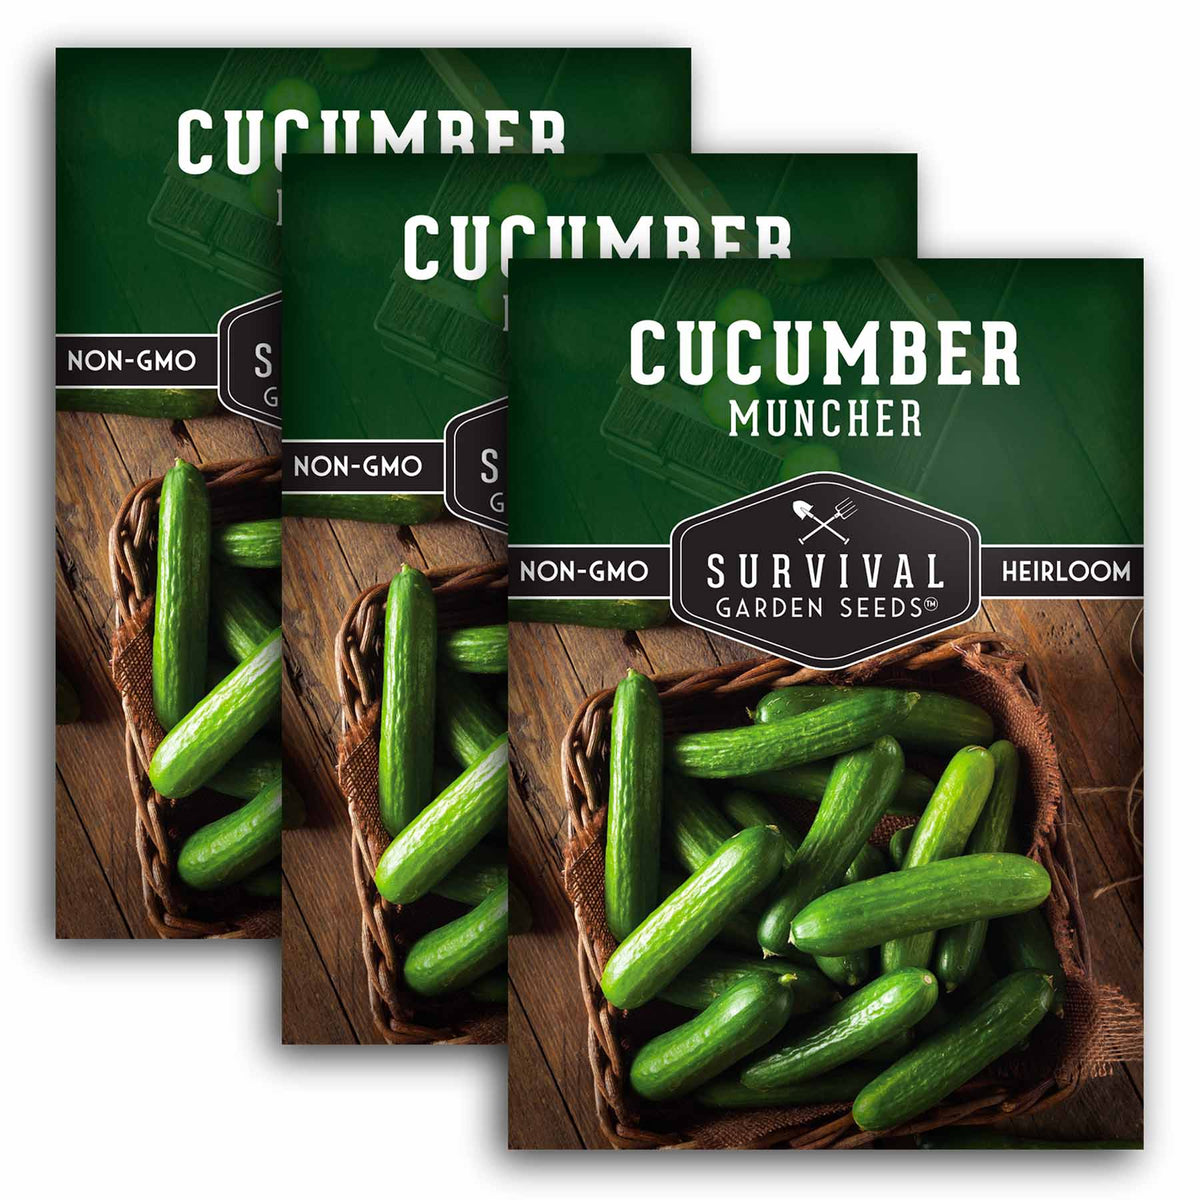 3 packets of Muncher Cucumber seeds